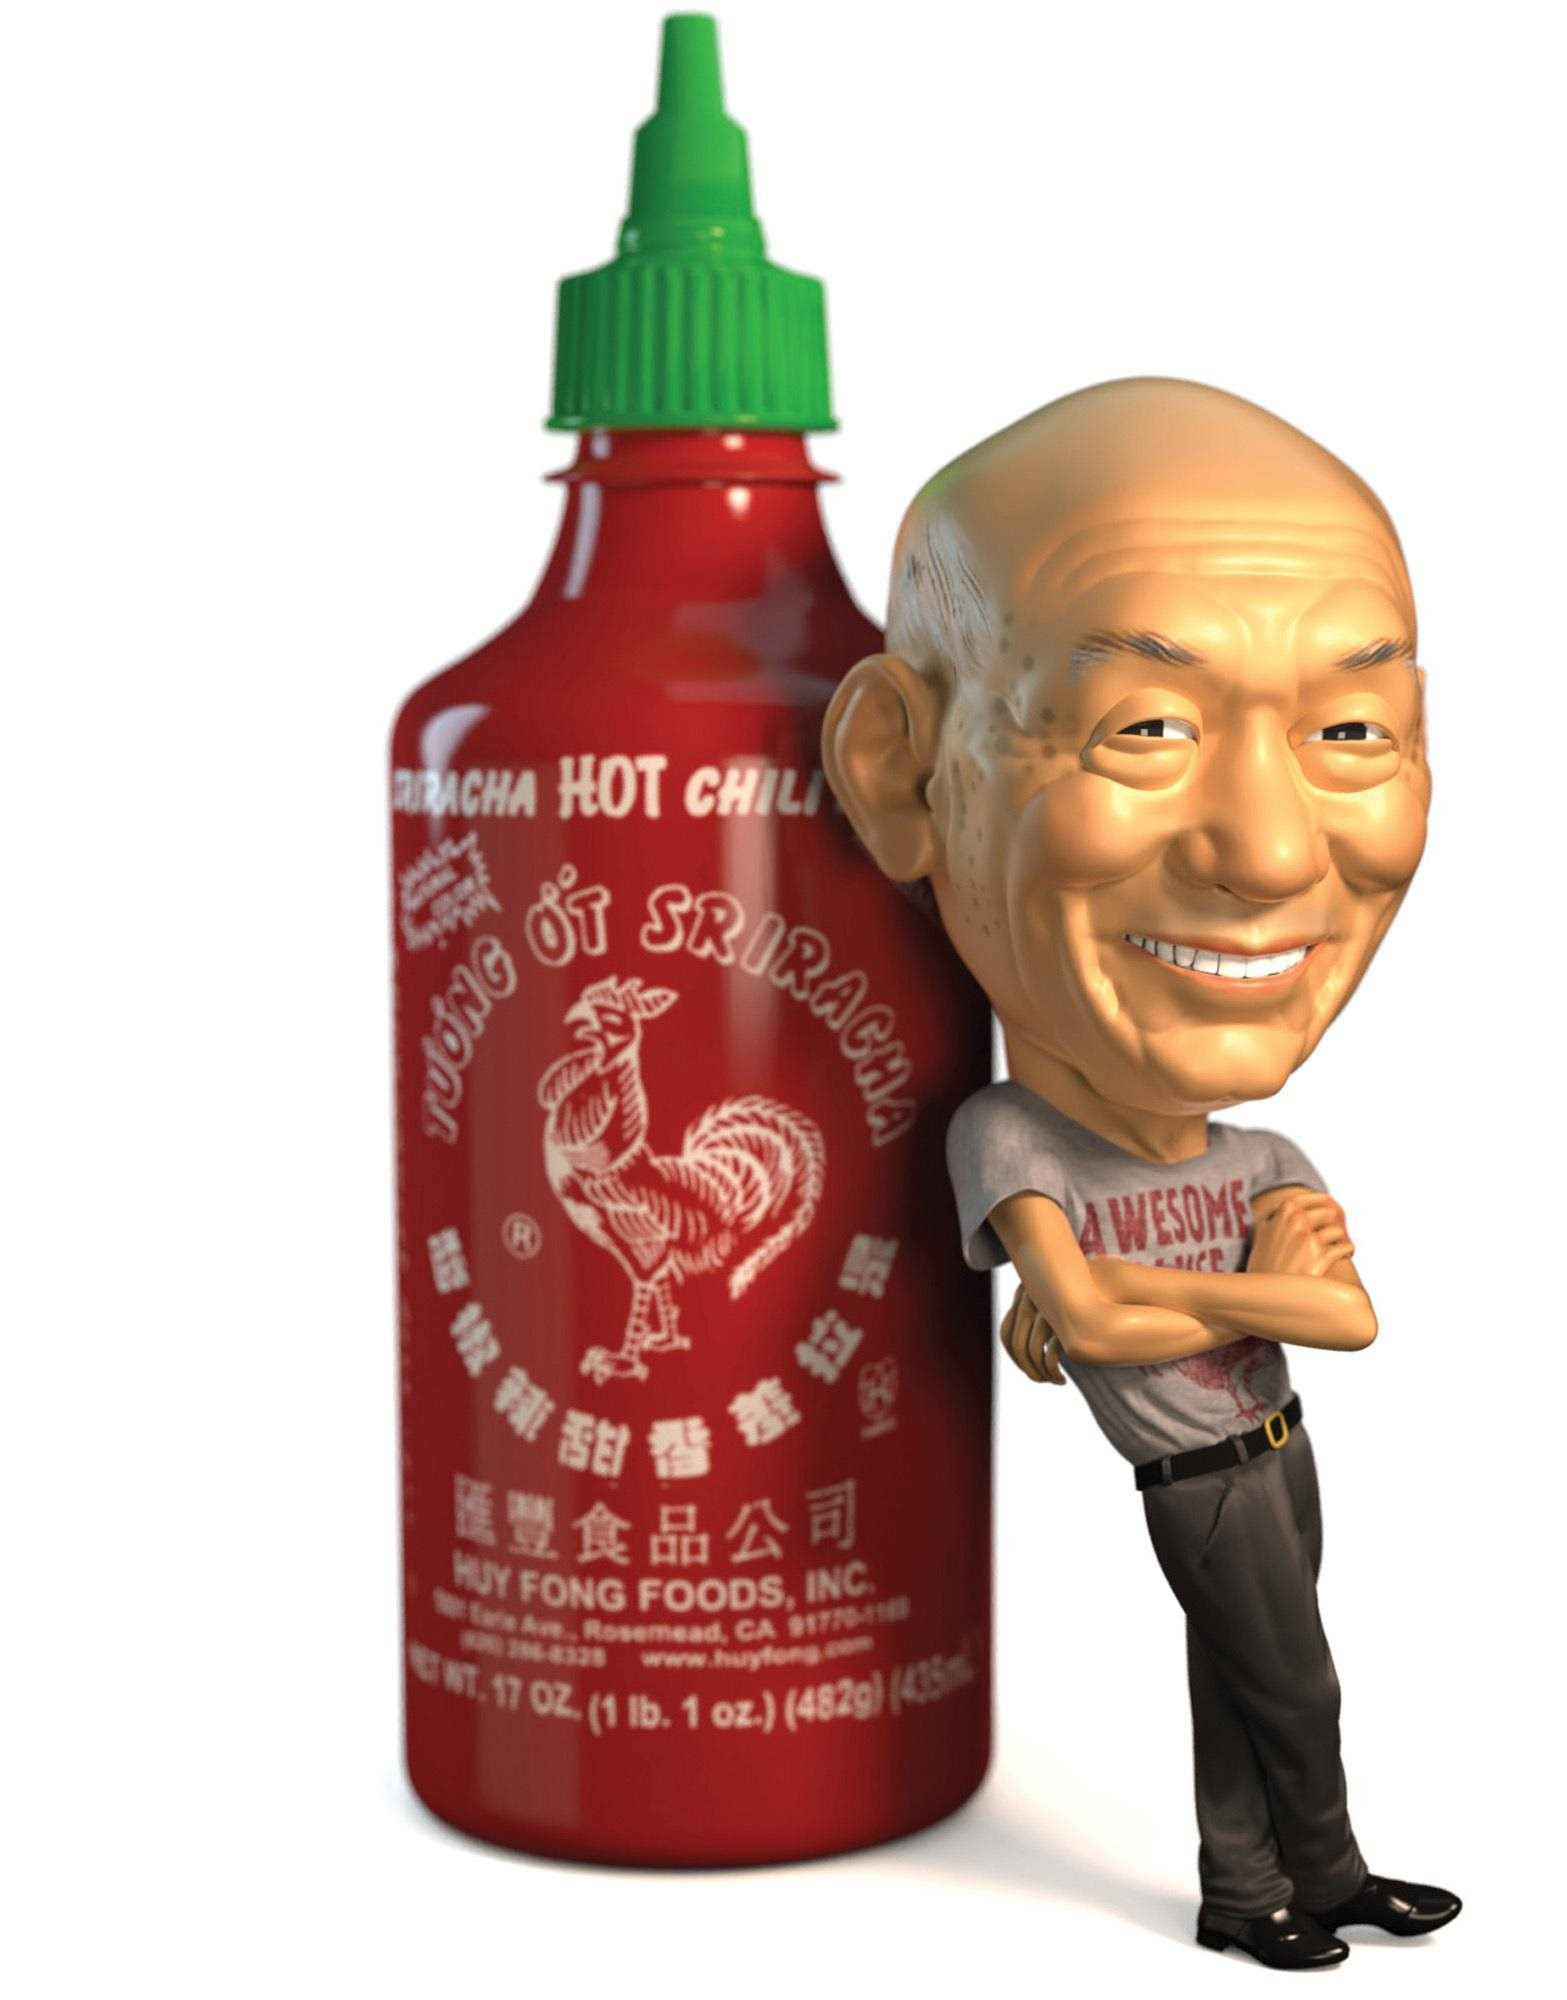 Vua tương ớt gốc Việt chính thức trở thành tỷ phú đôla: Không tốn 1 xu quảng cáo, 40 năm không tăng giá bán buôn, âm thầm đưa Sriracha lên bàn ăn khắp thế giới - Ảnh 1.